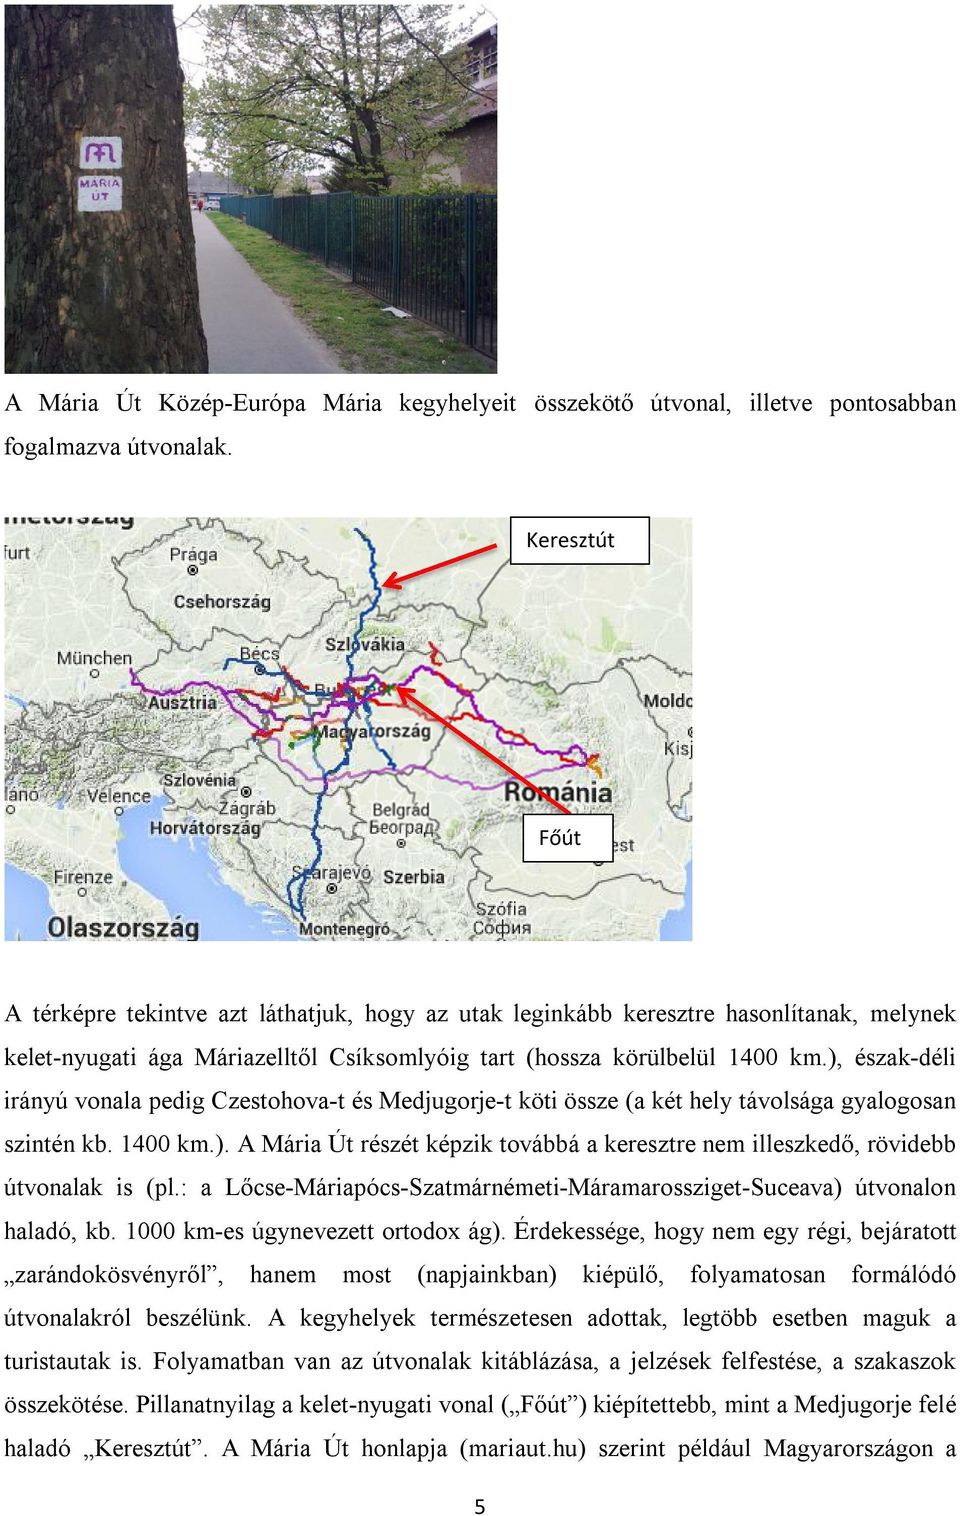 ), észak-déli irányú vonala pedig Czestohova-t és Medjugorje-t köti össze (a két hely távolsága gyalogosan szintén kb. 1400 km.). A Mária Út részét képzik továbbá a keresztre nem illeszkedő, rövidebb útvonalak is (pl.